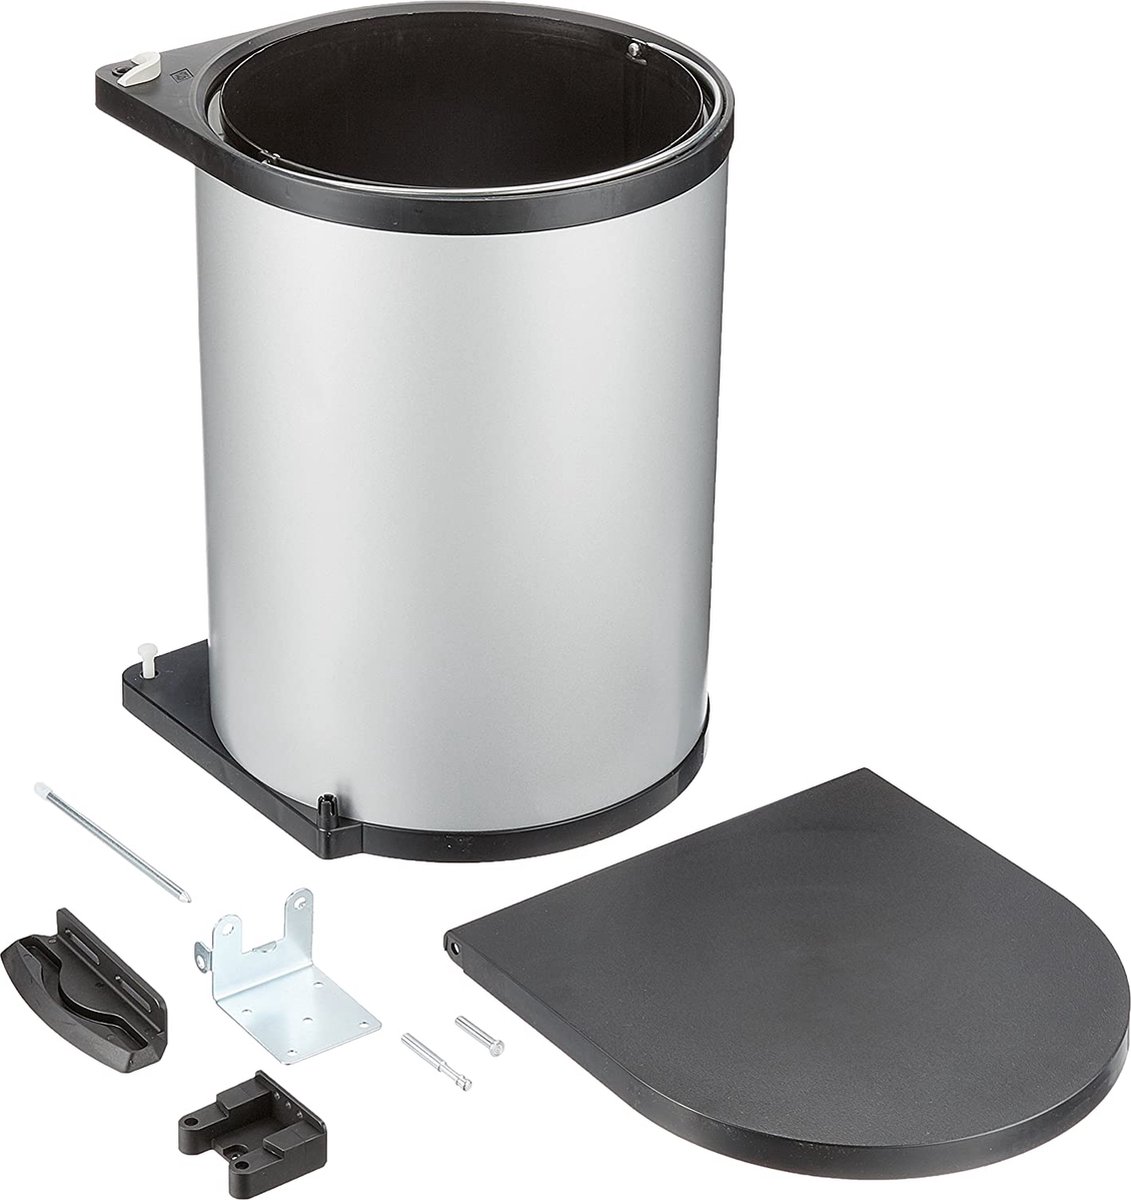 RESKO - Afvalverzamelaar - Metaal - Zilver - 34 x 47 x 28,5 cm - Afvalemmer - Vuilnisbak - Inbouwprullenbak - Inbouwemmer